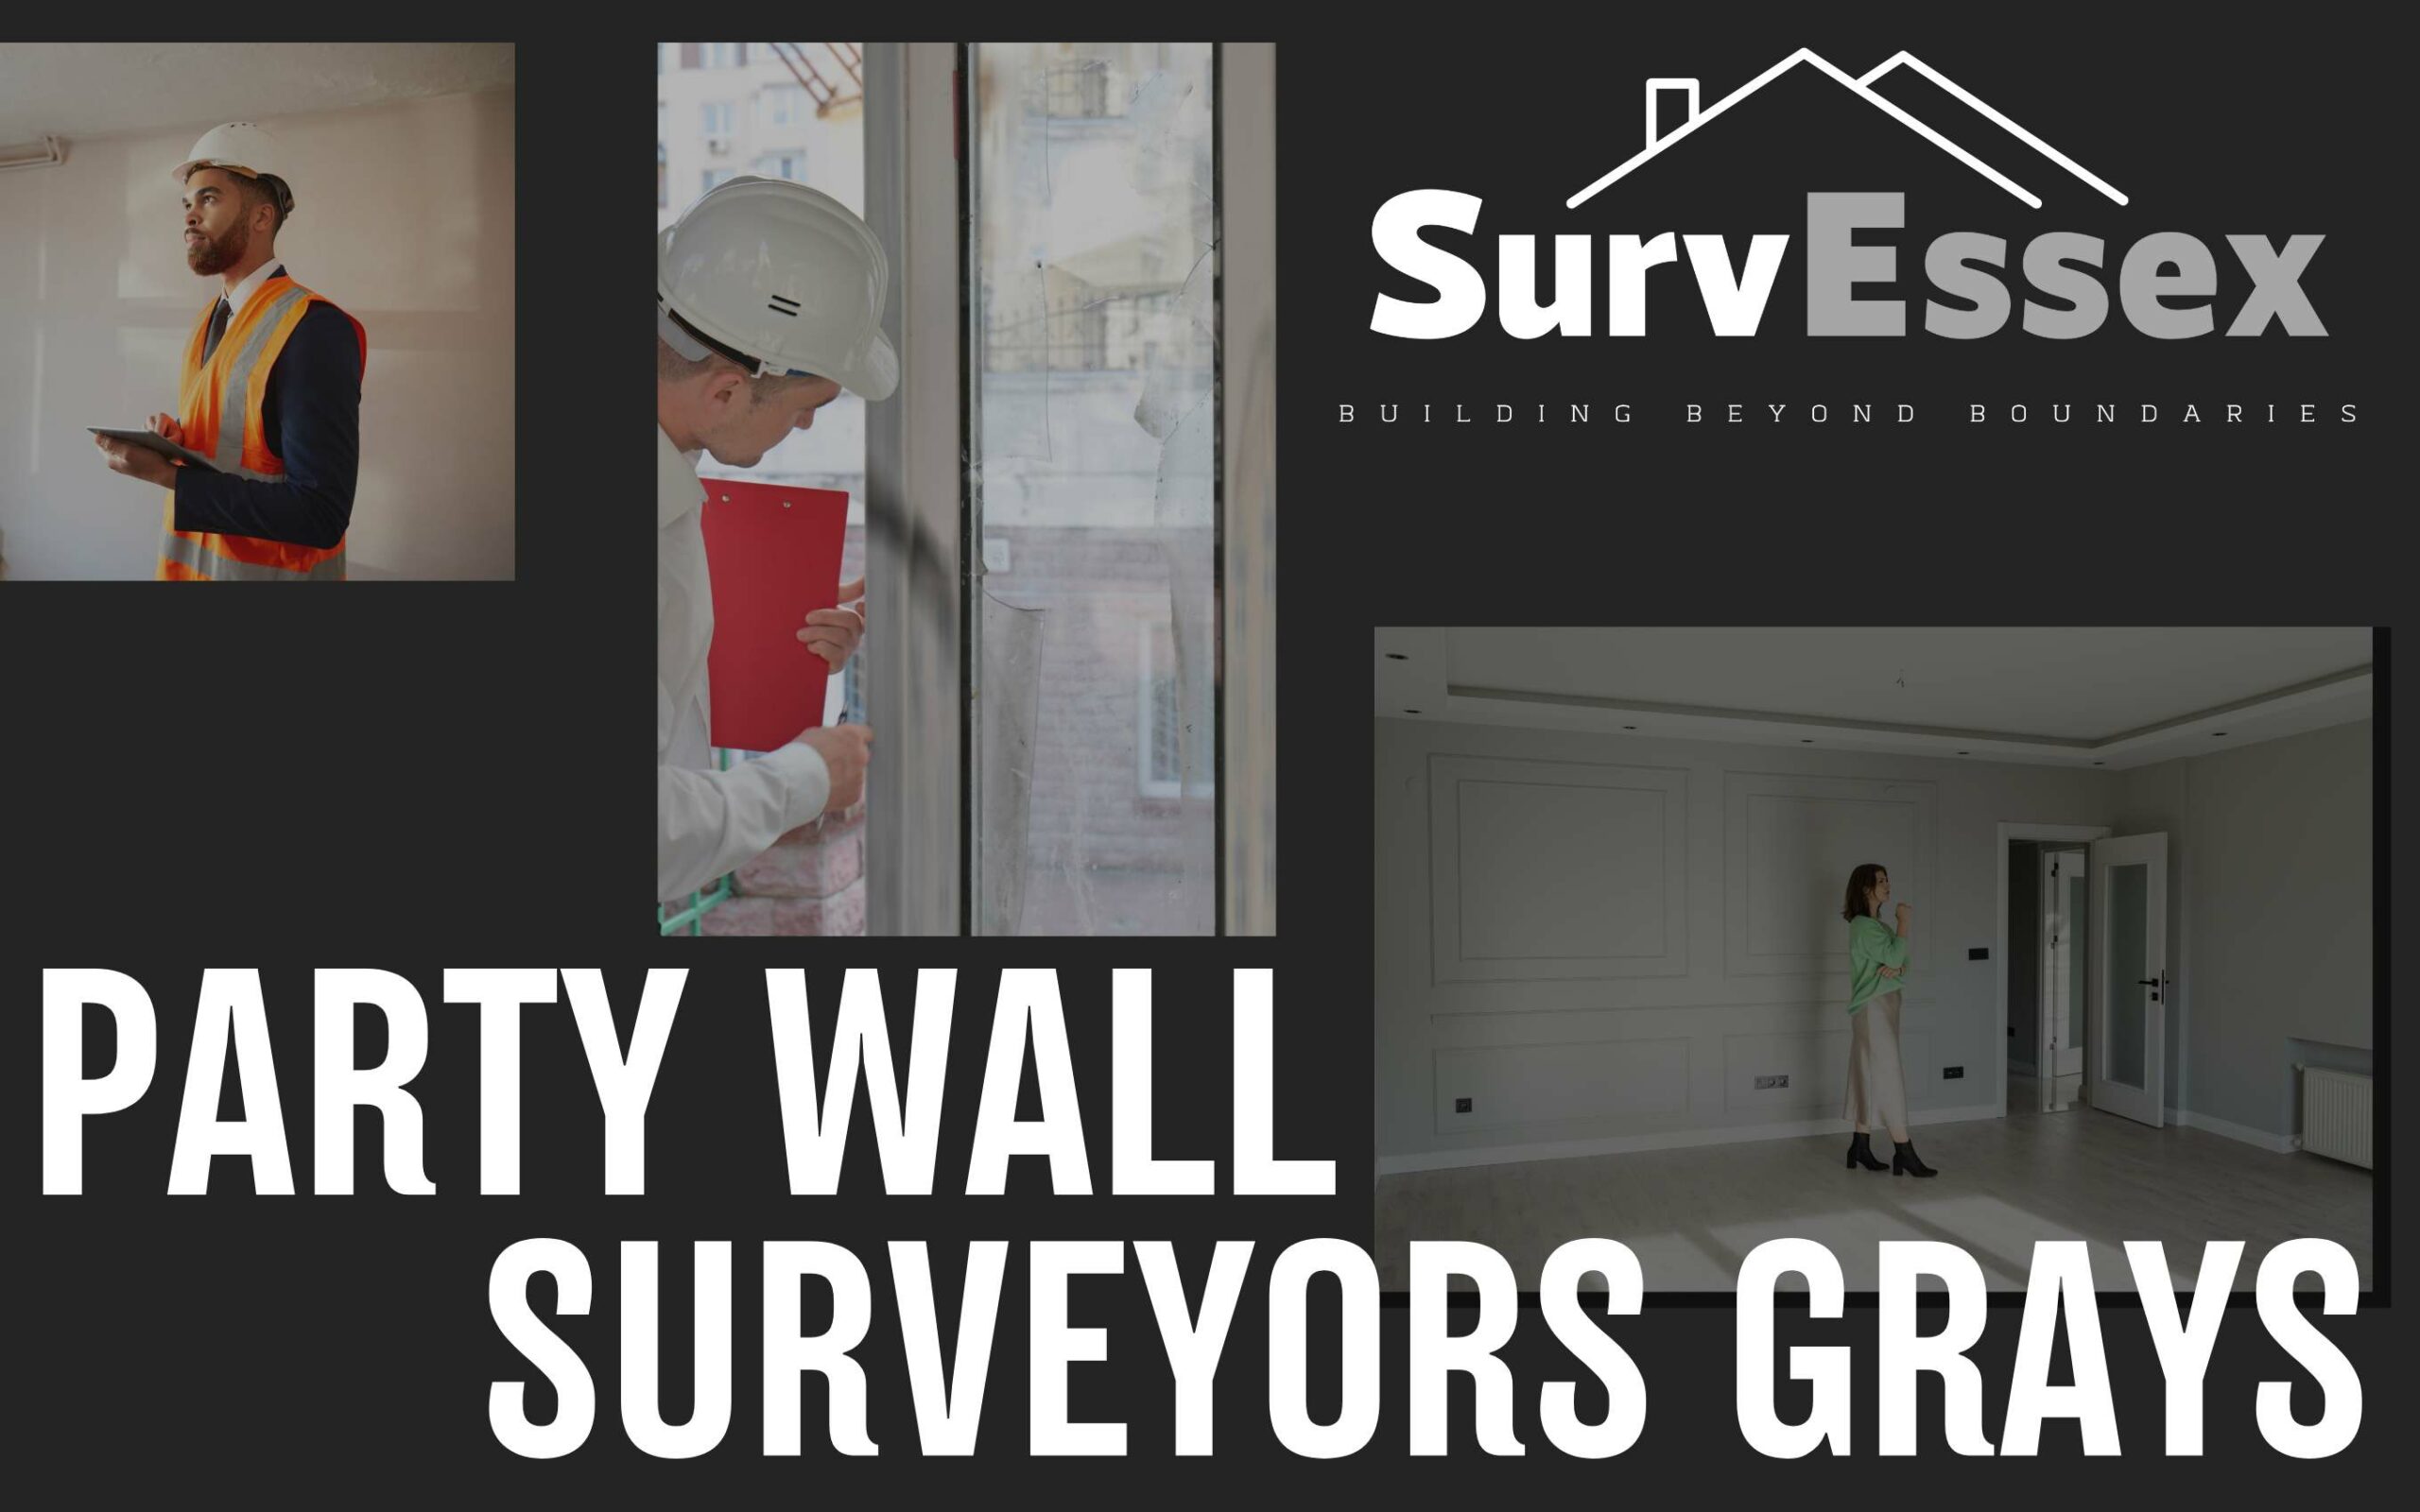 Party Wall Surveyor Grays